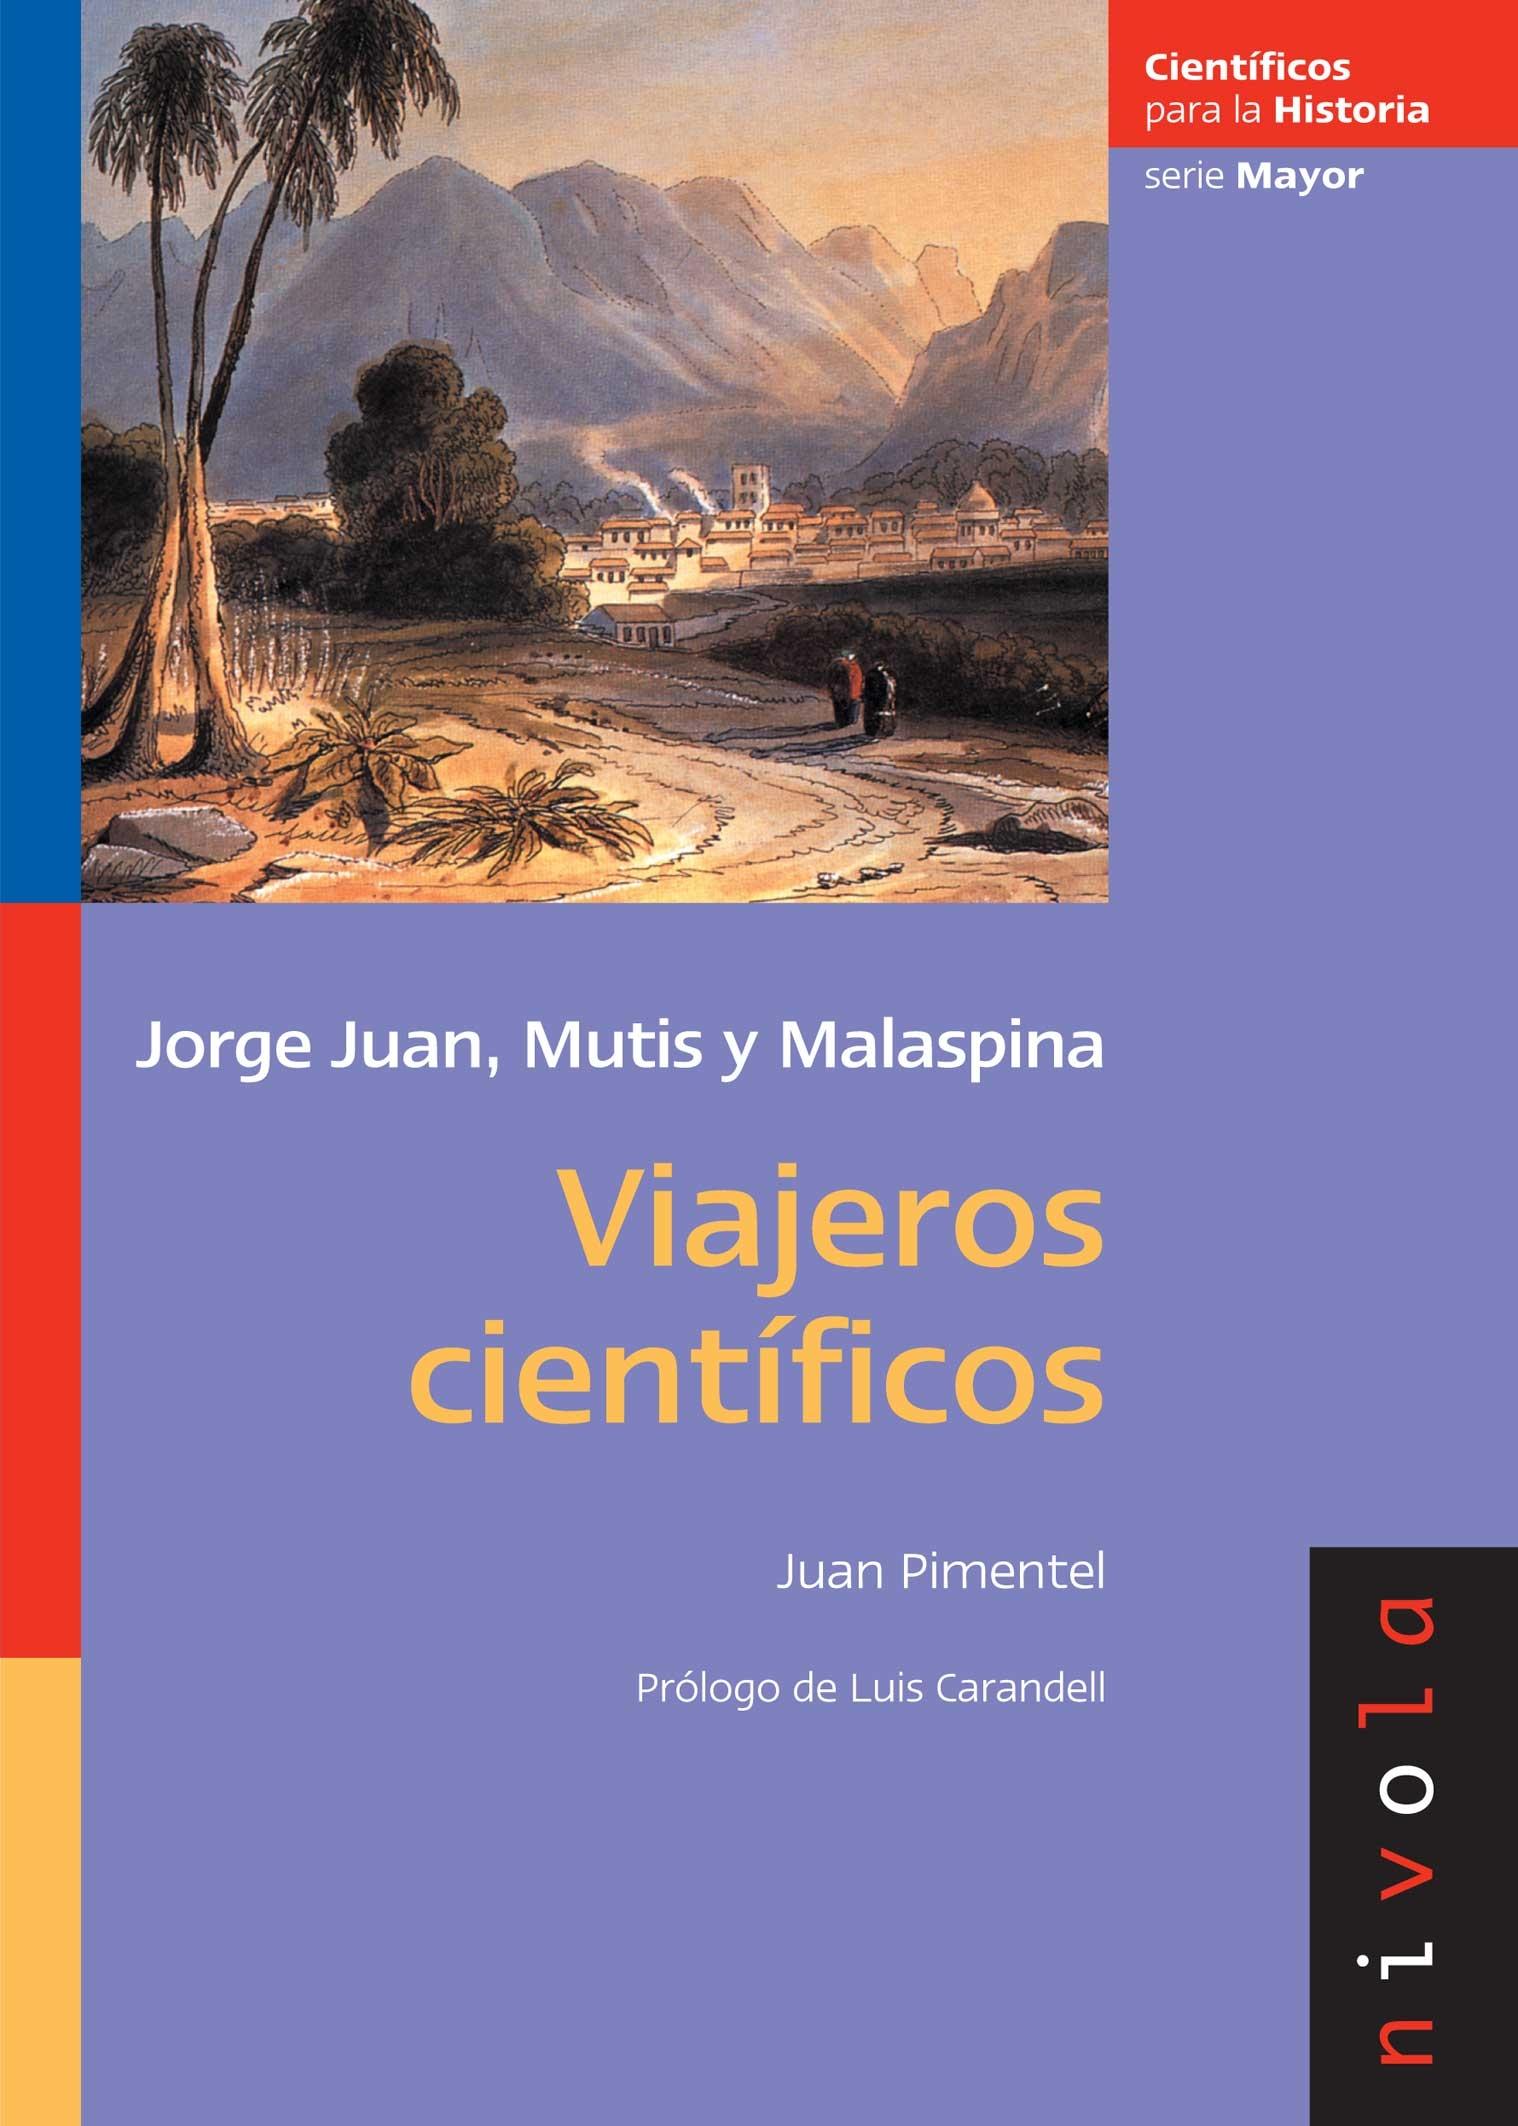 Viajeros científicos "Jorge Juan, Mutis y malaespina". 